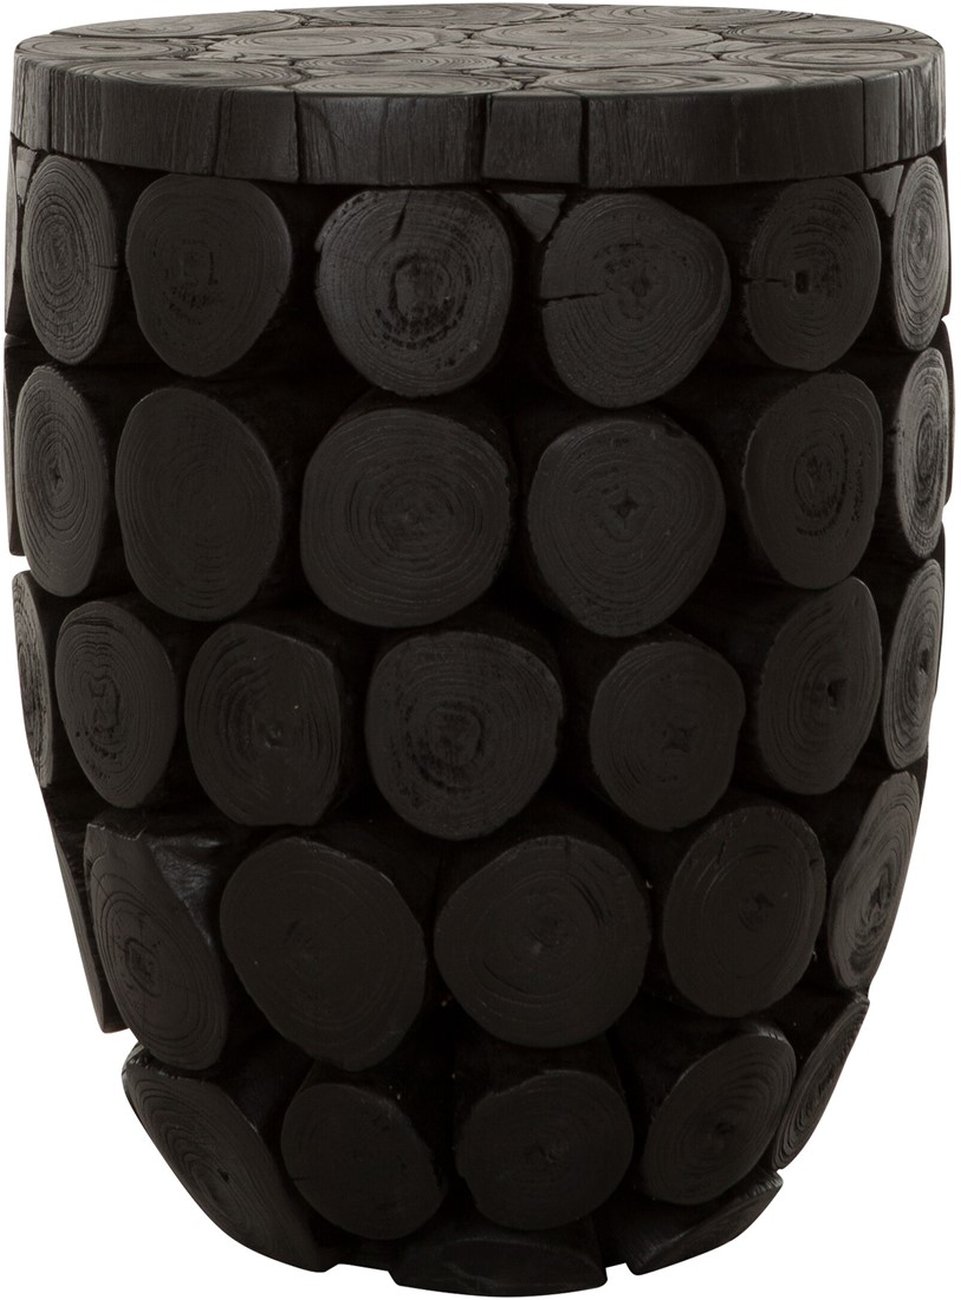 Der Couchtisch Cone überzeugt mit seinem modernen Design. Gefertigt wurde es aus recyceltem Teakholz, welches einen schwarzen Farbton besitzt. Der Couchtisch besitzt einen Durchmesser von 36 cm.